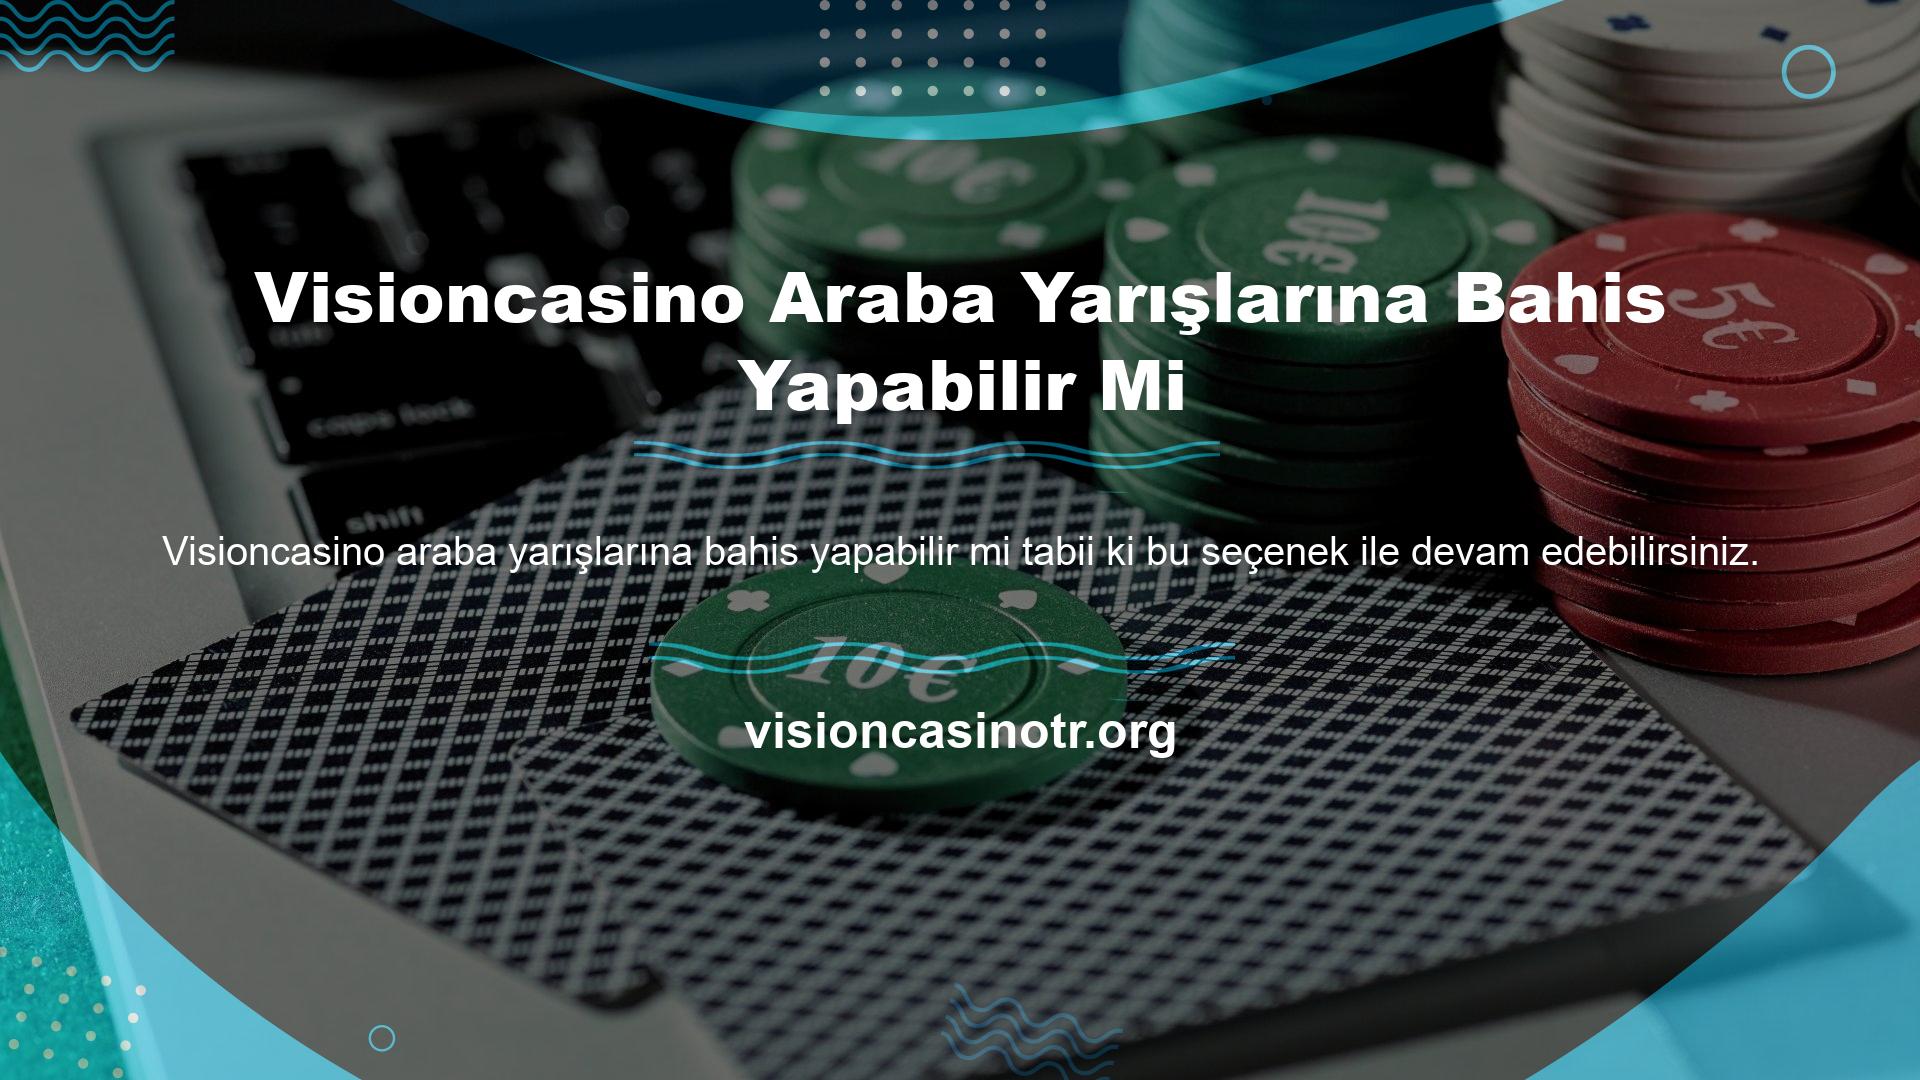 Visioncasino yapma fırsatları yayınlayan web siteleri var